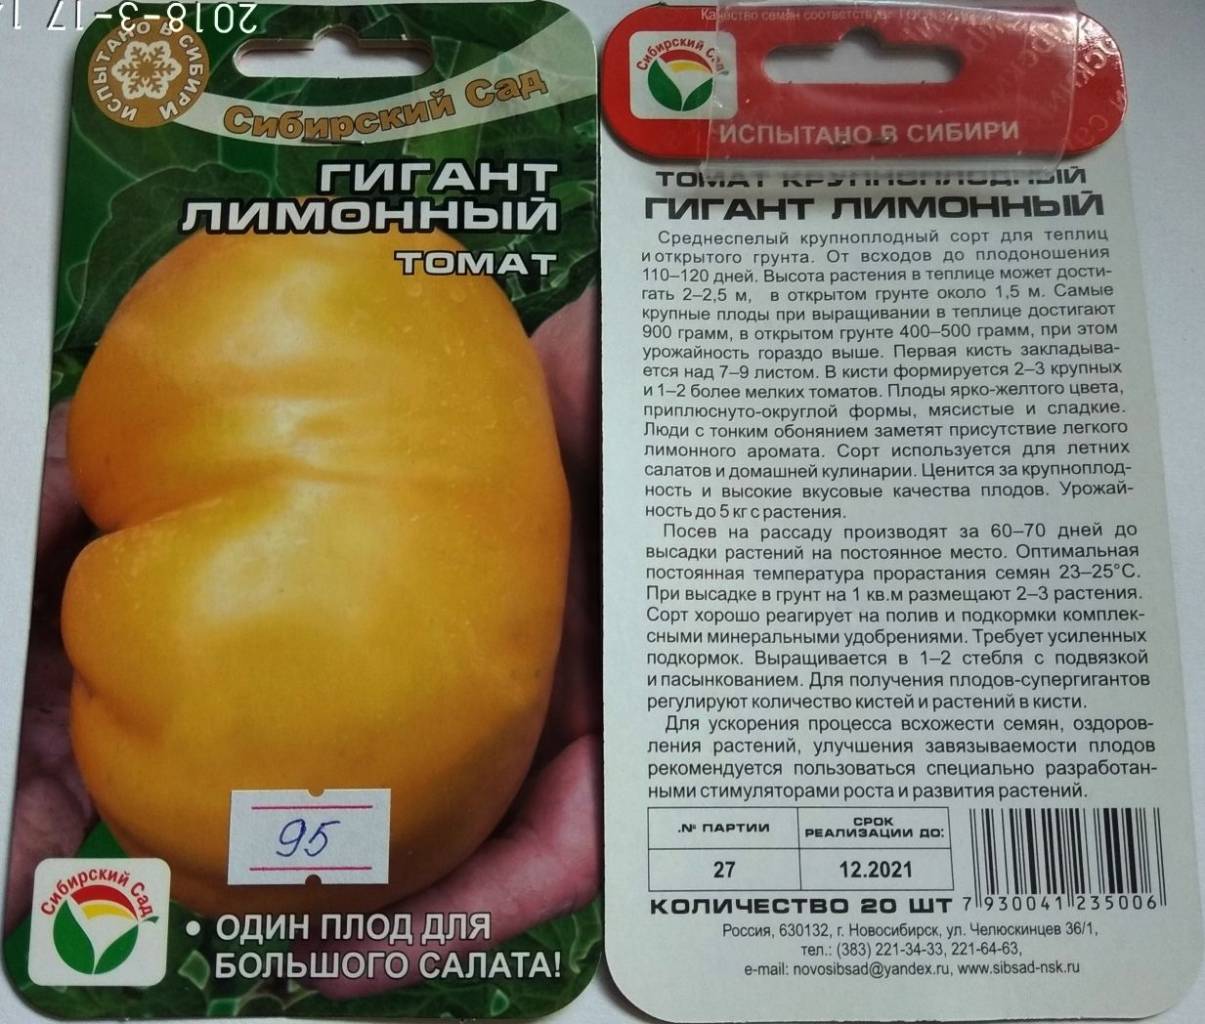 Томат биг биф f1: описание характеристик сорта помидора с фото русский фермер